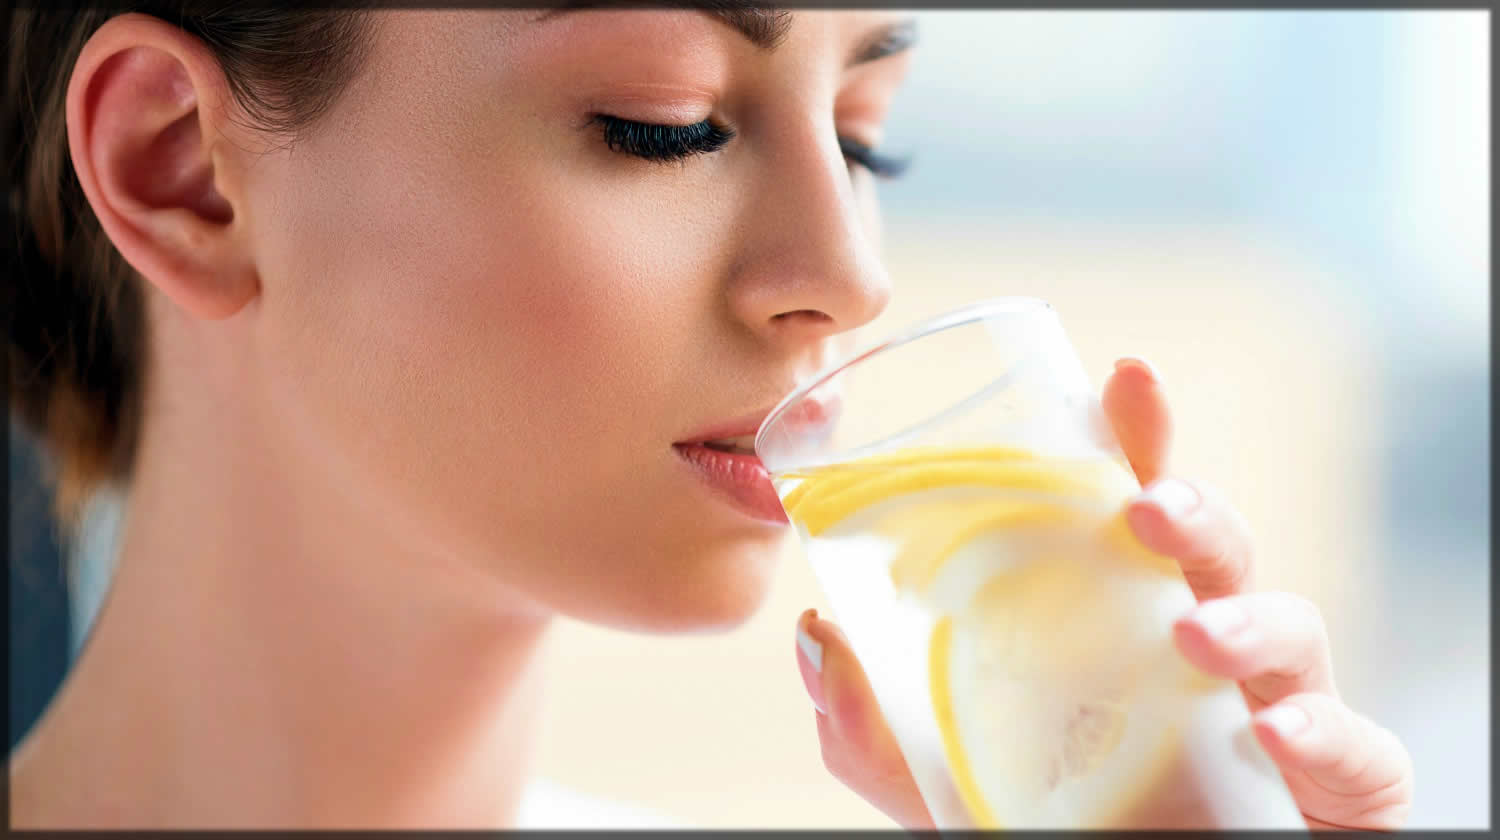 Daily skin care lemon water tip for women